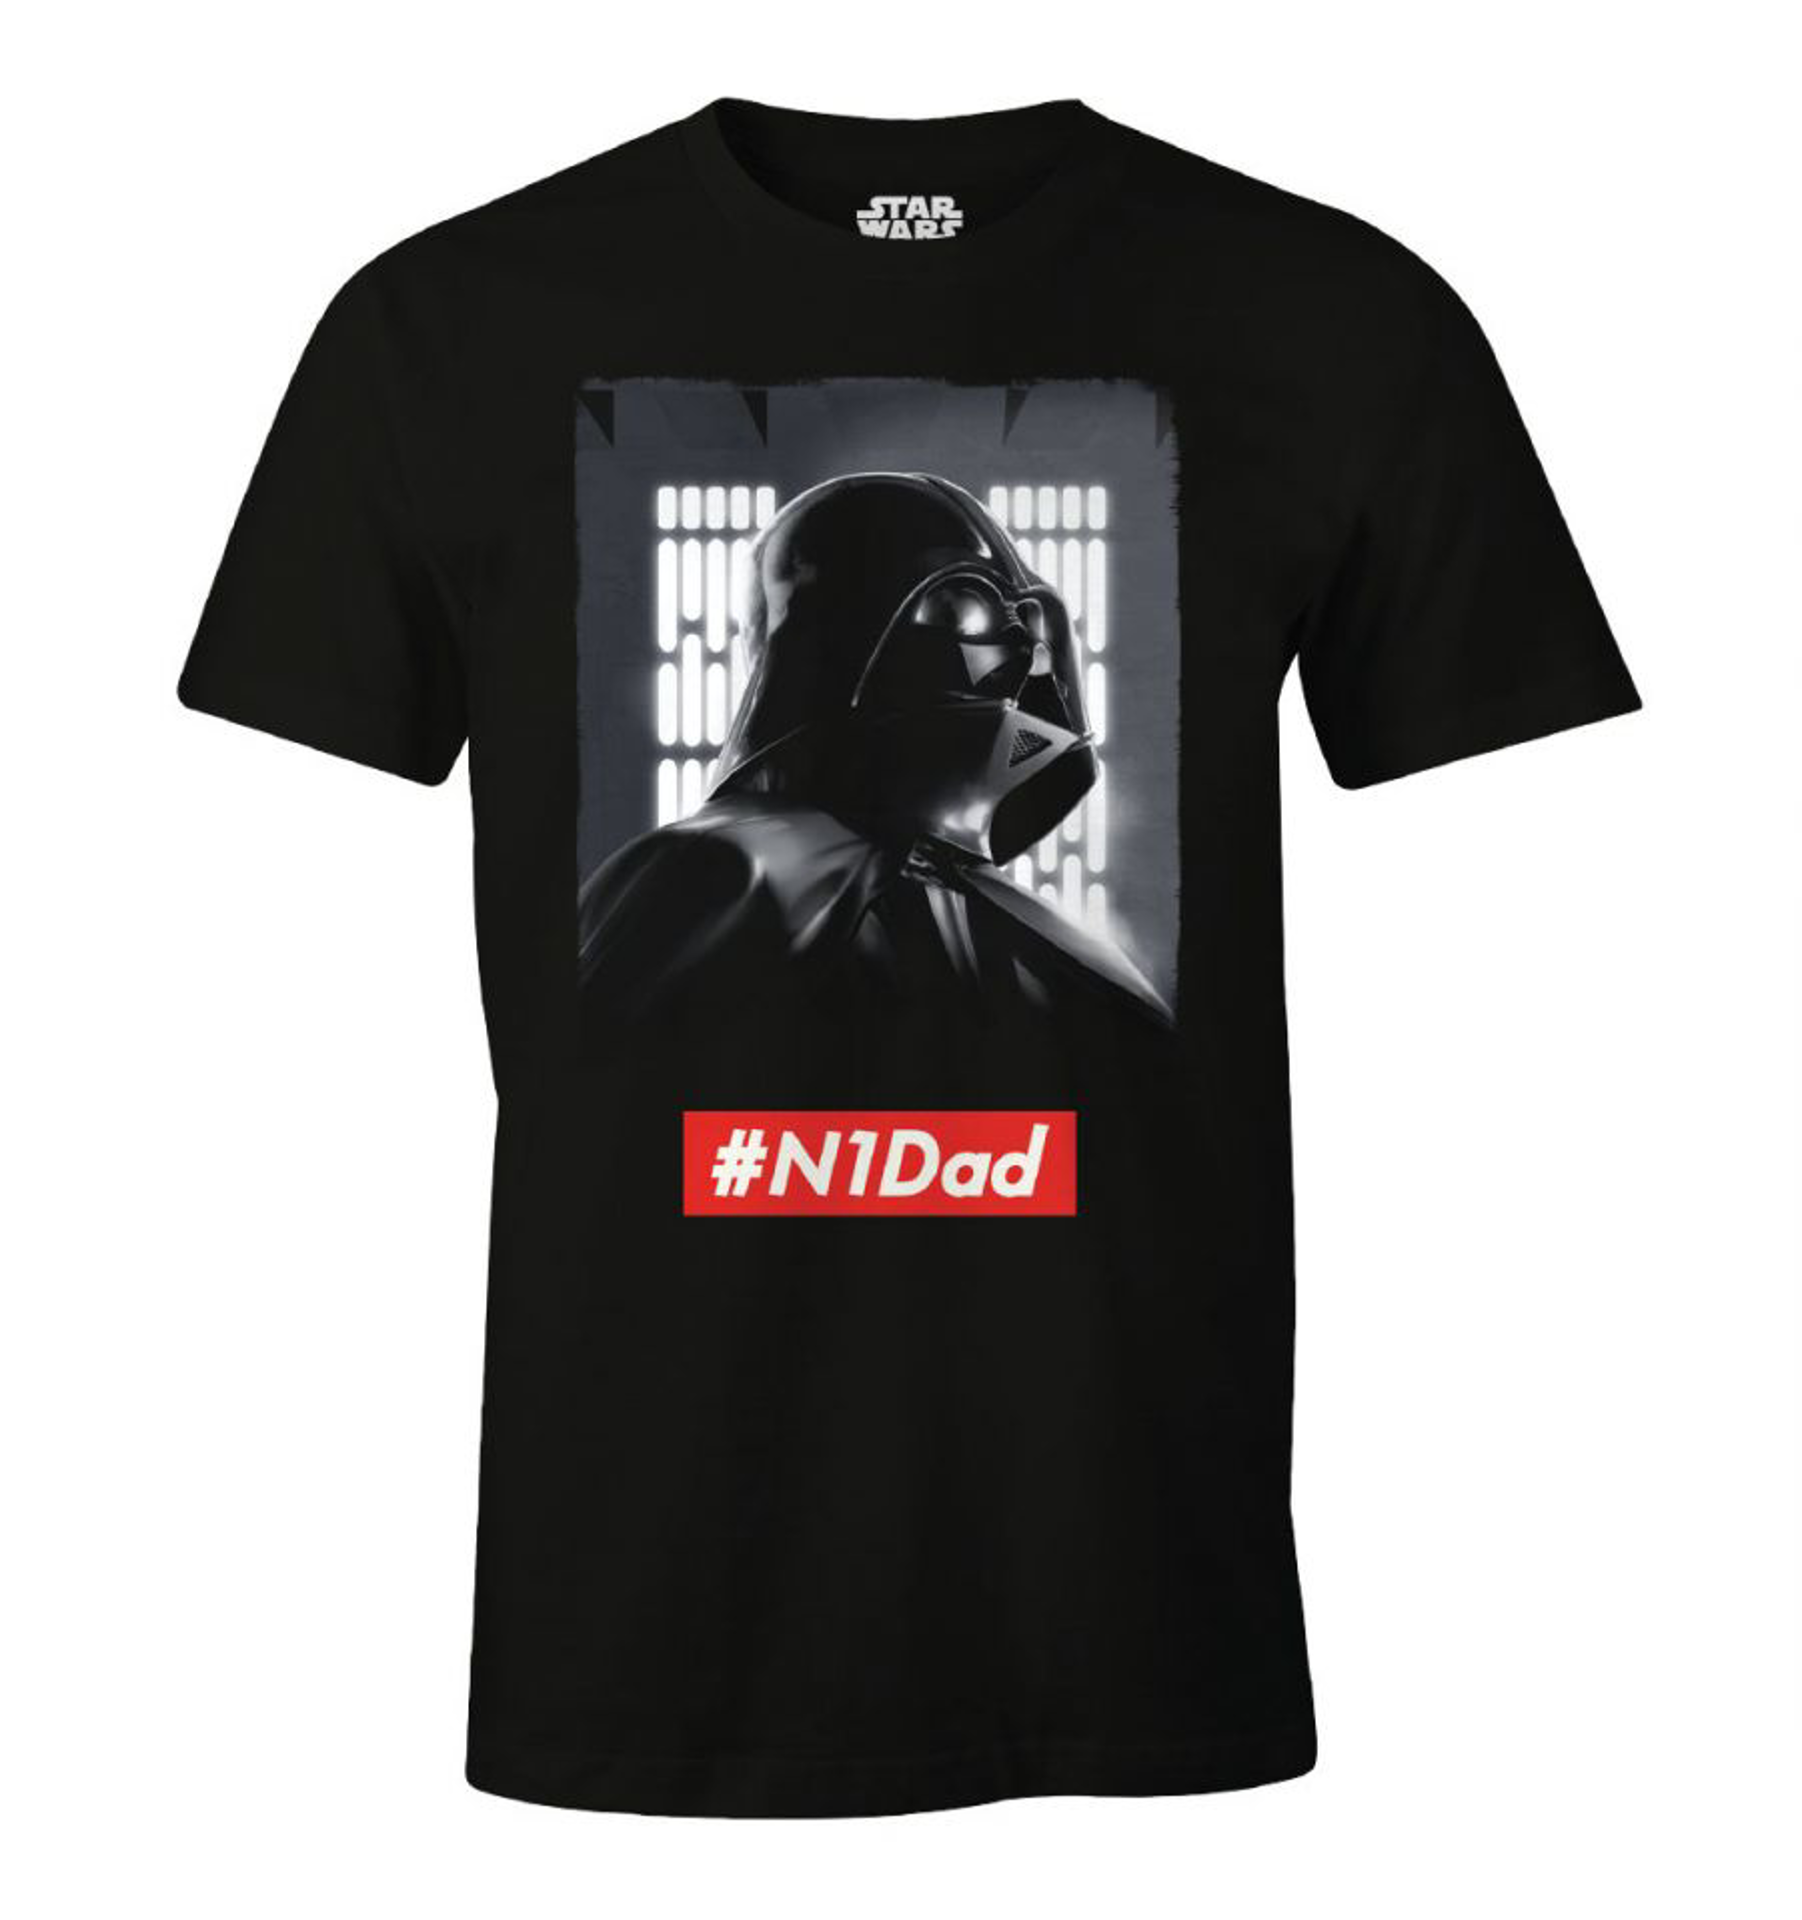 Star Wars - N1Dad Black T-Shirt - L